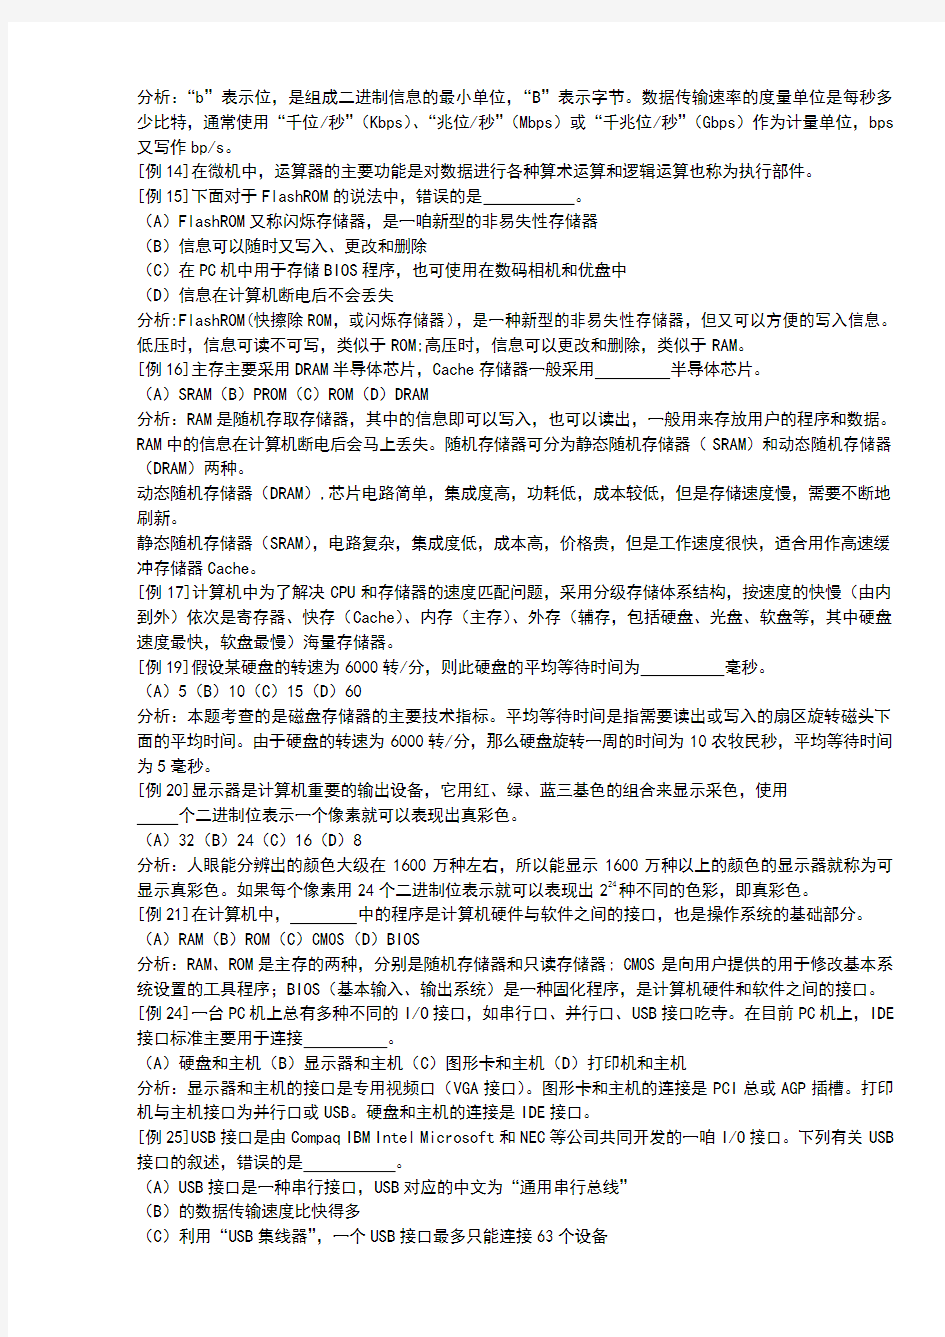 江苏省计算机等级考试基础知识考题